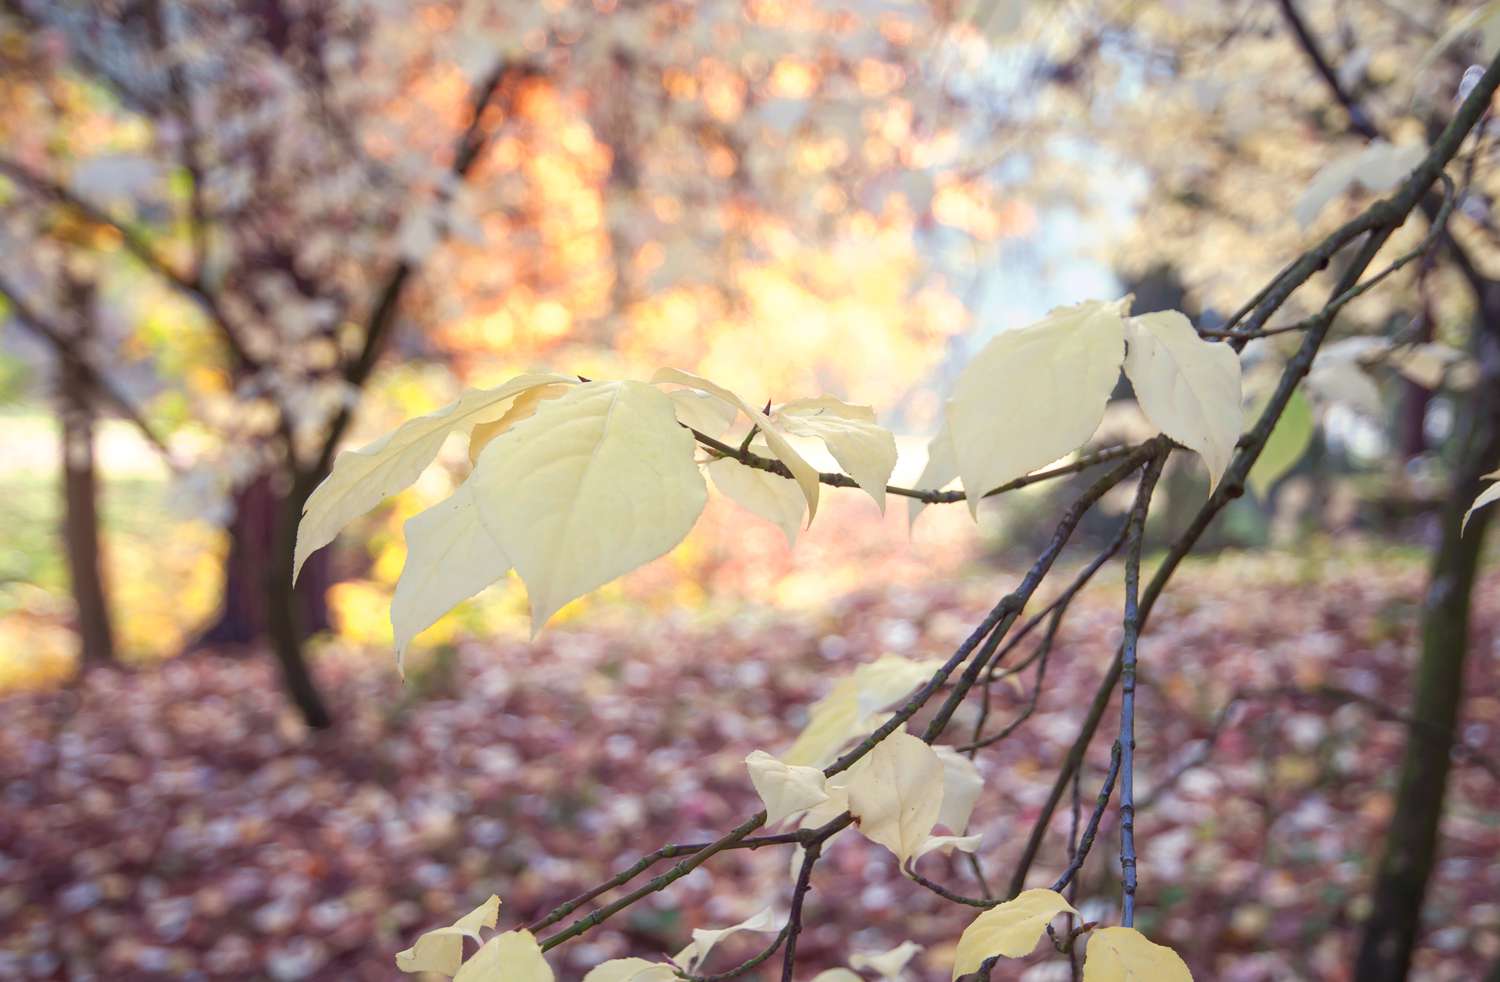 Europäischer Spindelbaumzweig mit mehreren gelben Blättern am Ast